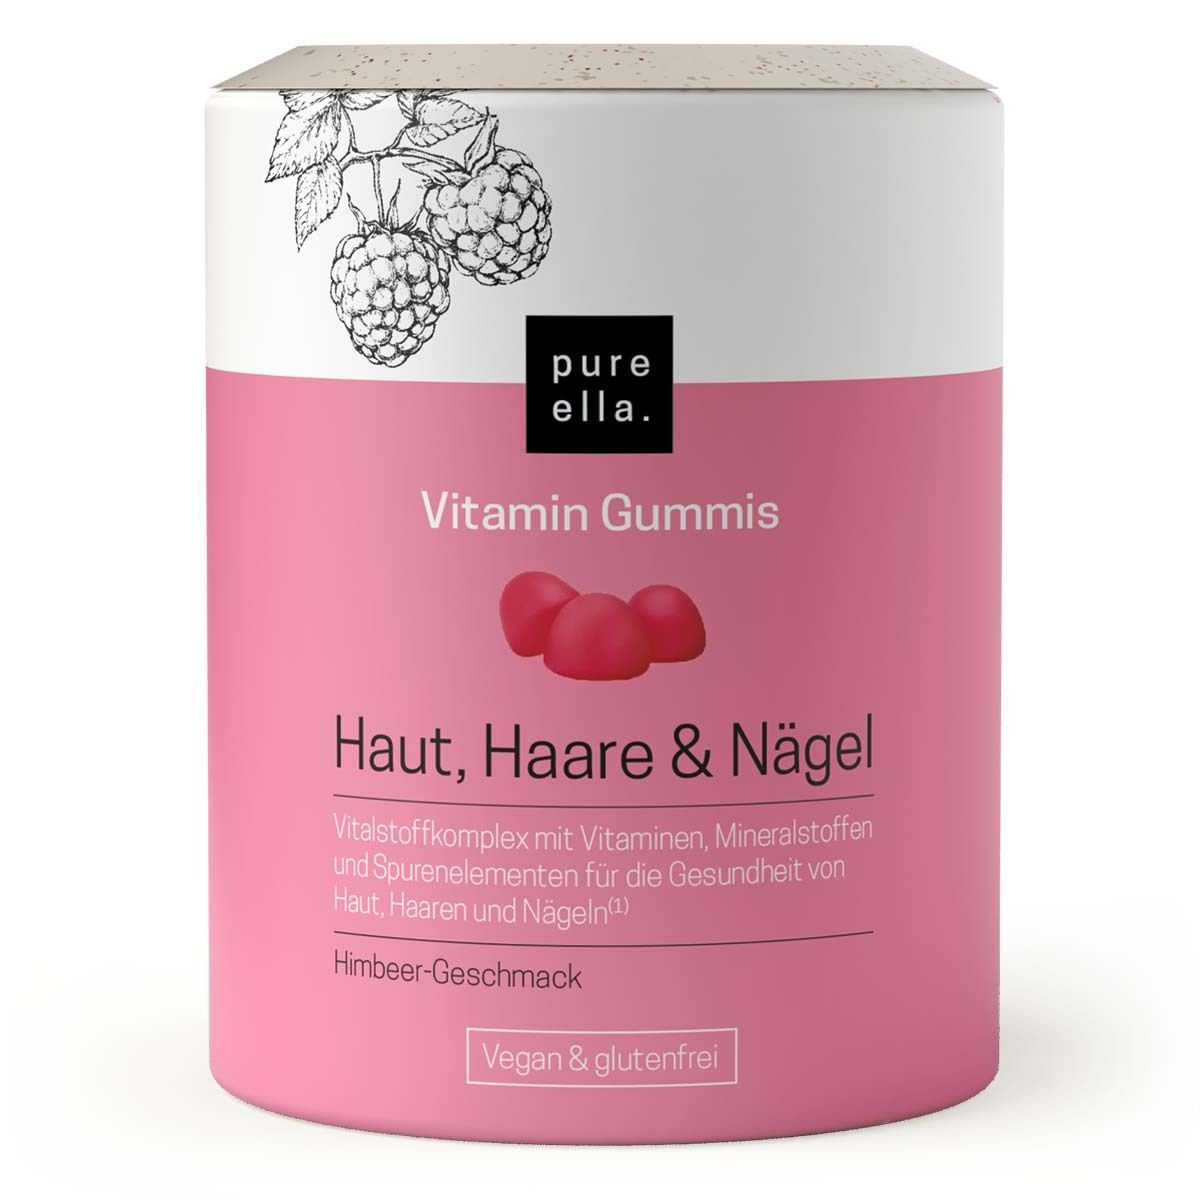 pure ella. Vitamin Gummis Haut, Haare & Nägel